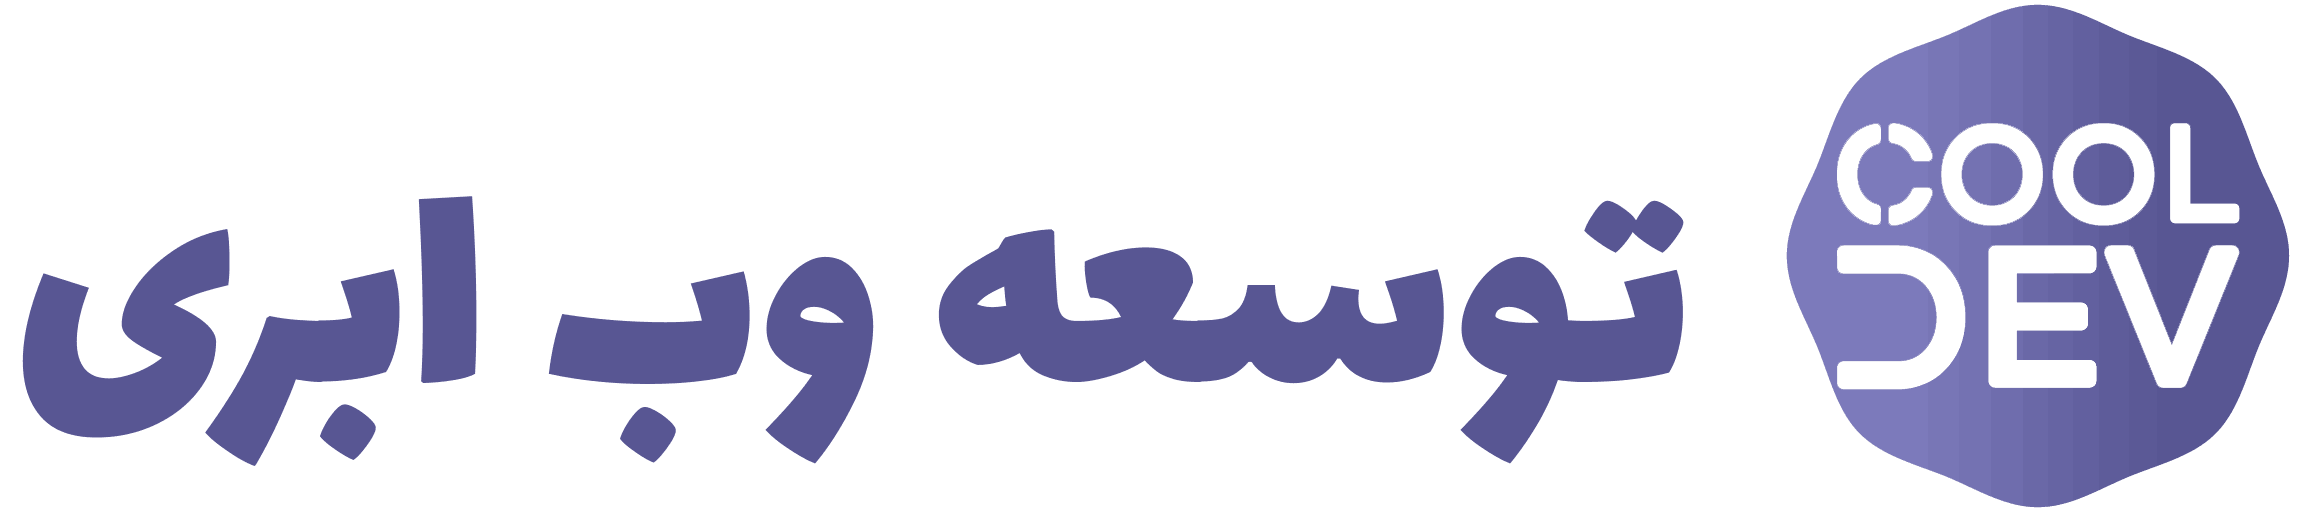 logo-ultrawide-purple